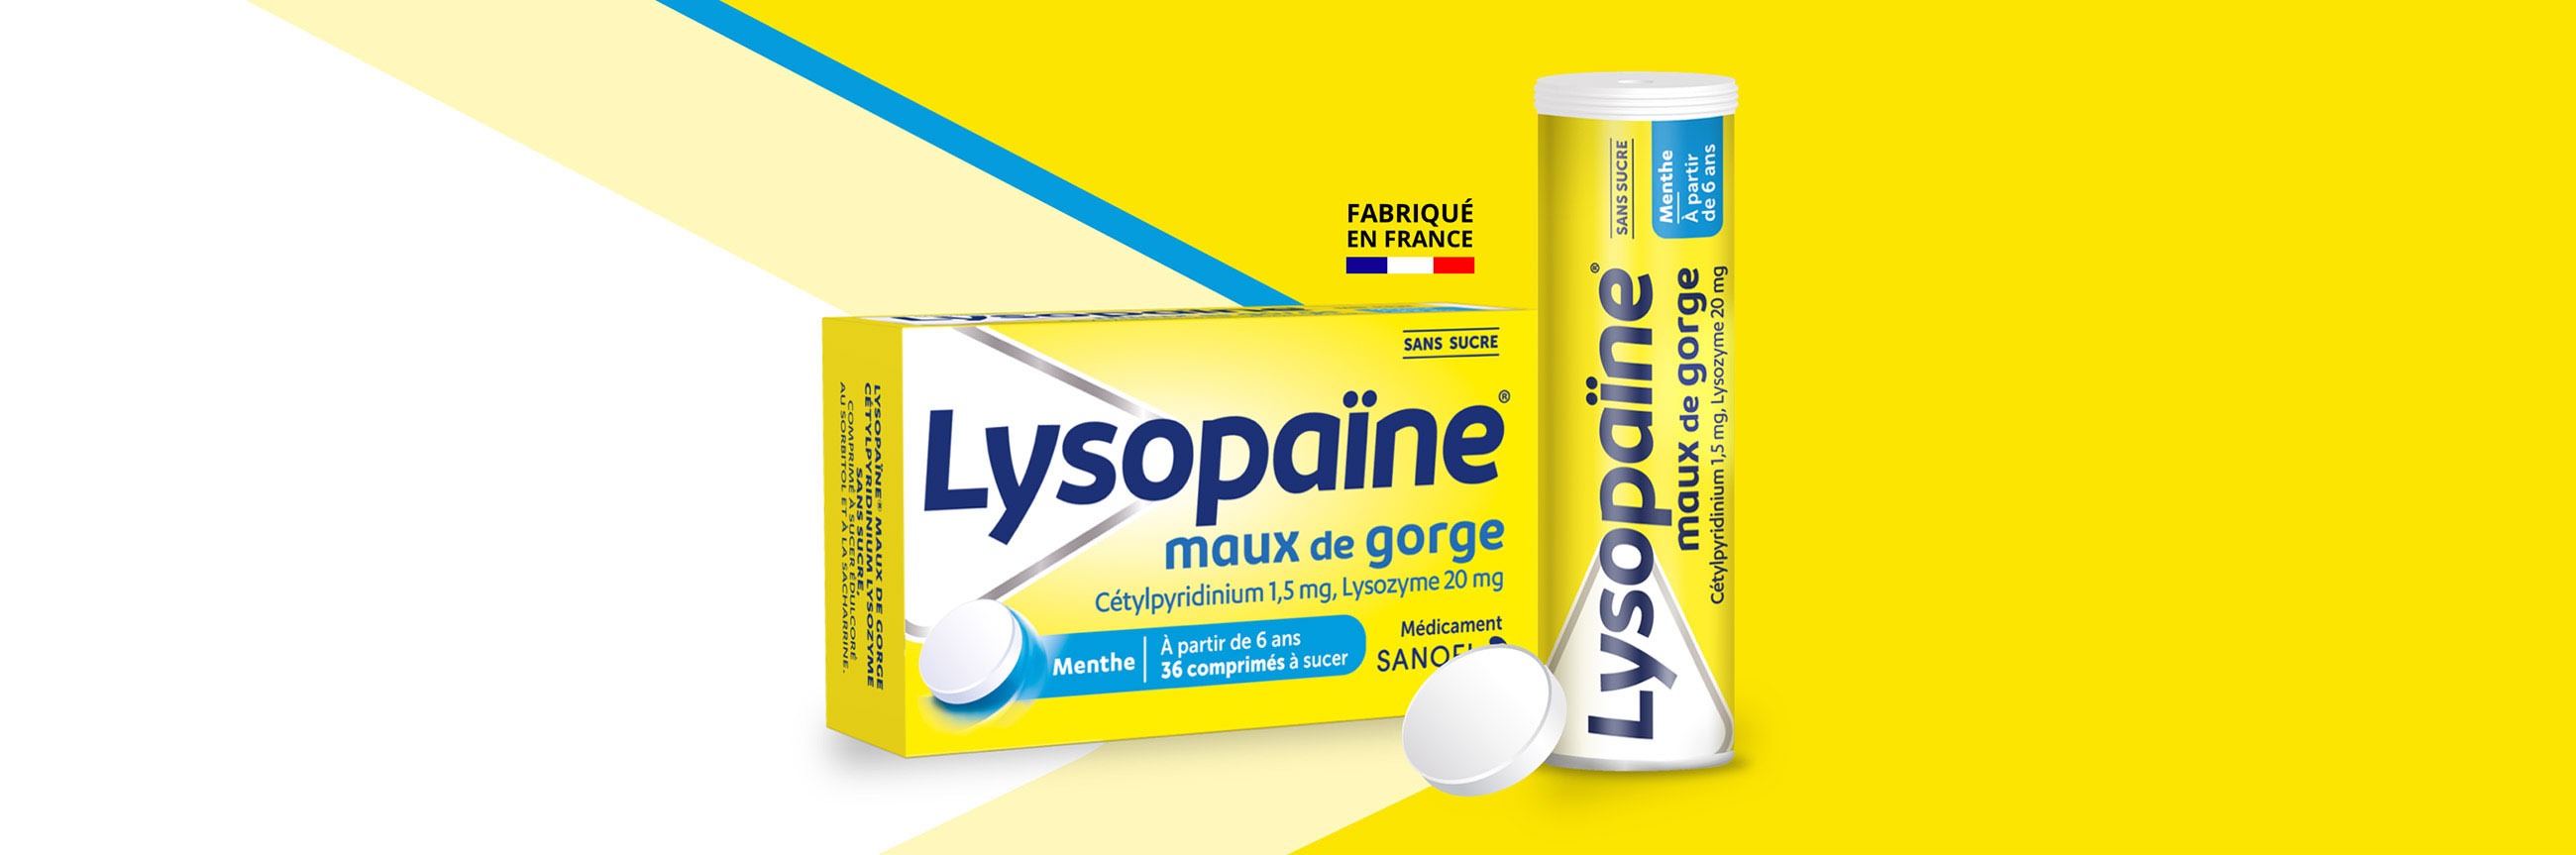 Lysopaïne maux de gorge Cétylpyridinium Lysozyme